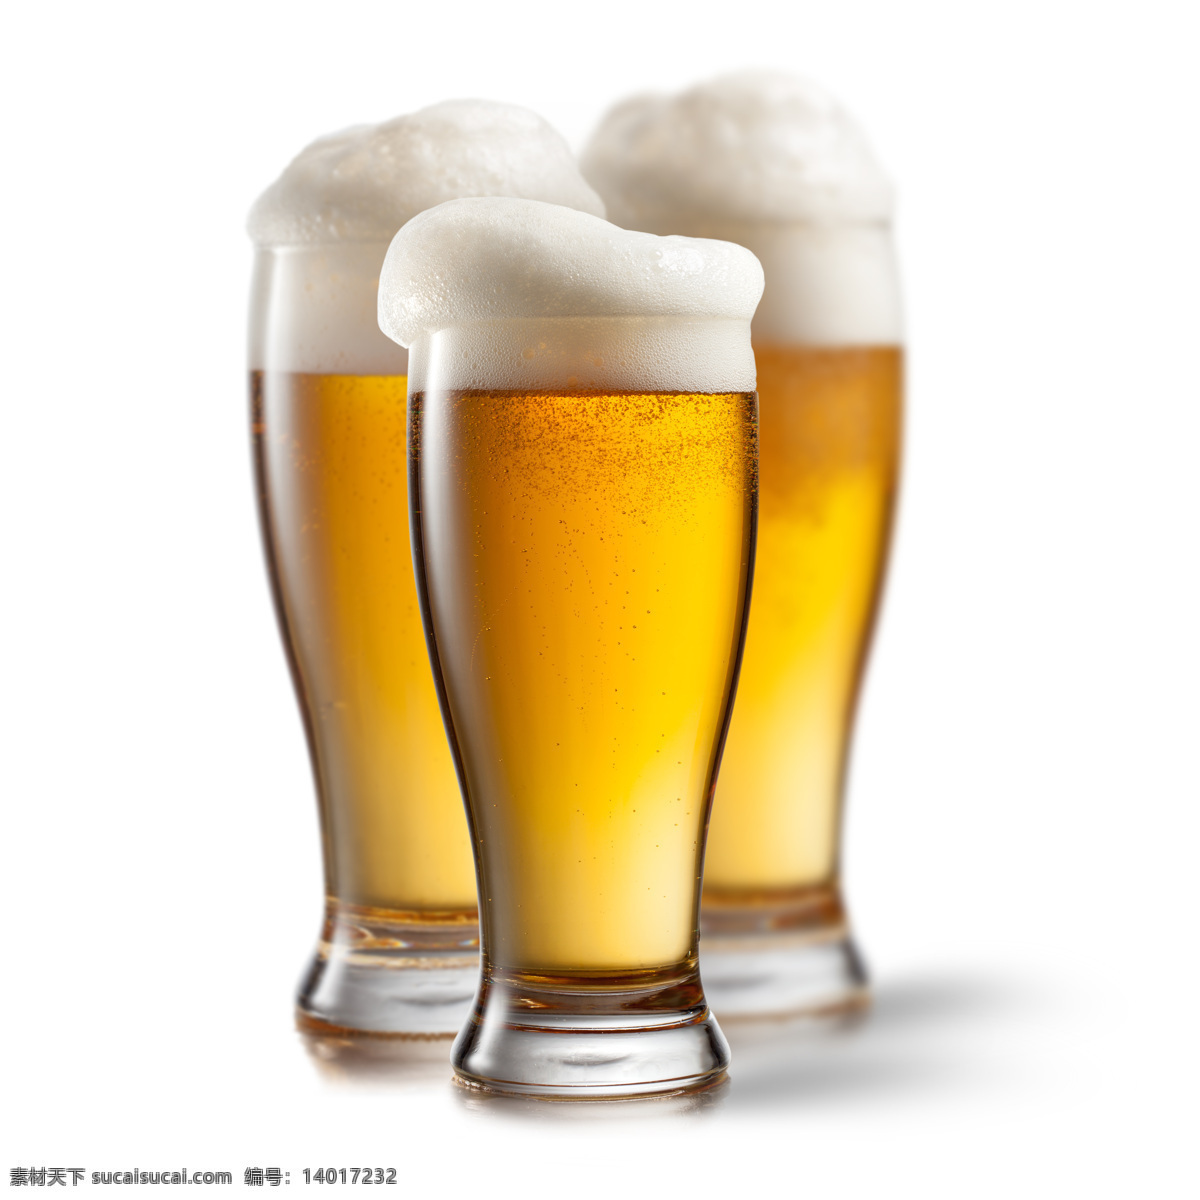 三杯 啤酒 啤酒杯 泡沫 三杯啤酒 酒水 酒类图片 餐饮美食